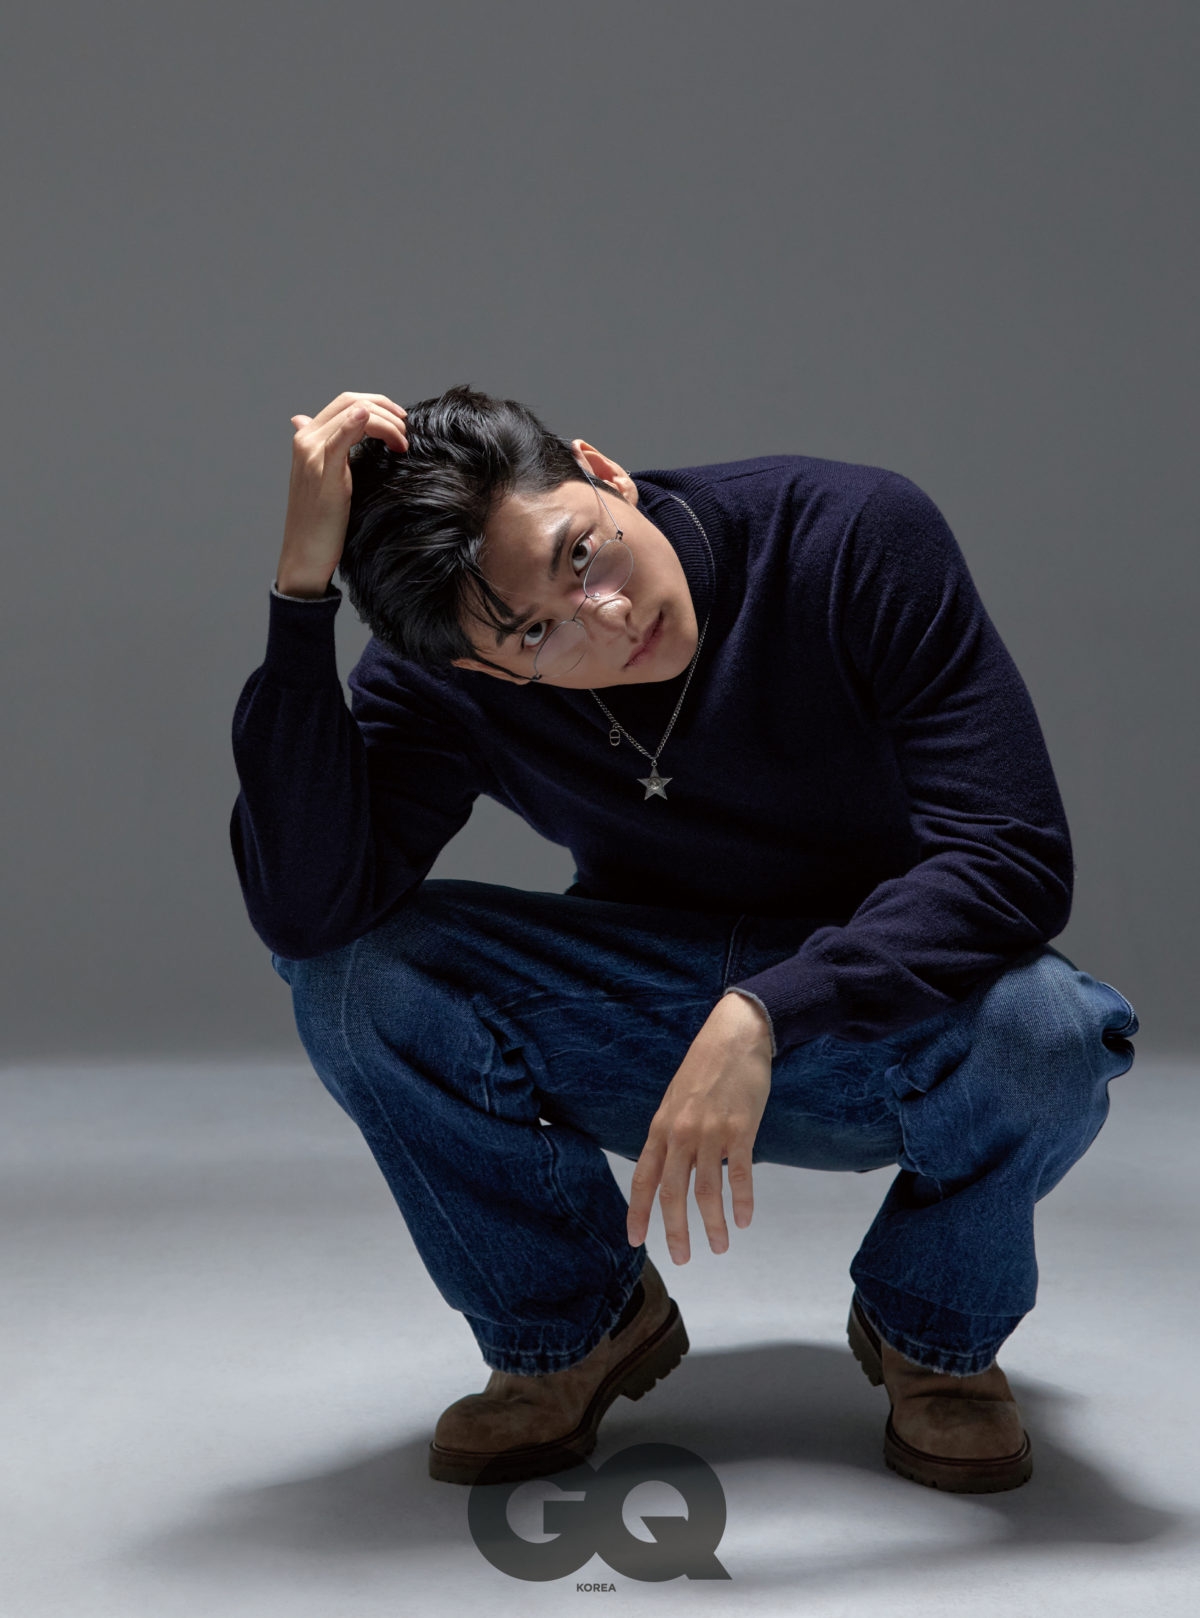 Tài tử Kang Tae Oh khoe vẻ đẹp nam tính trong bộ ảnh mới - Ảnh 2.